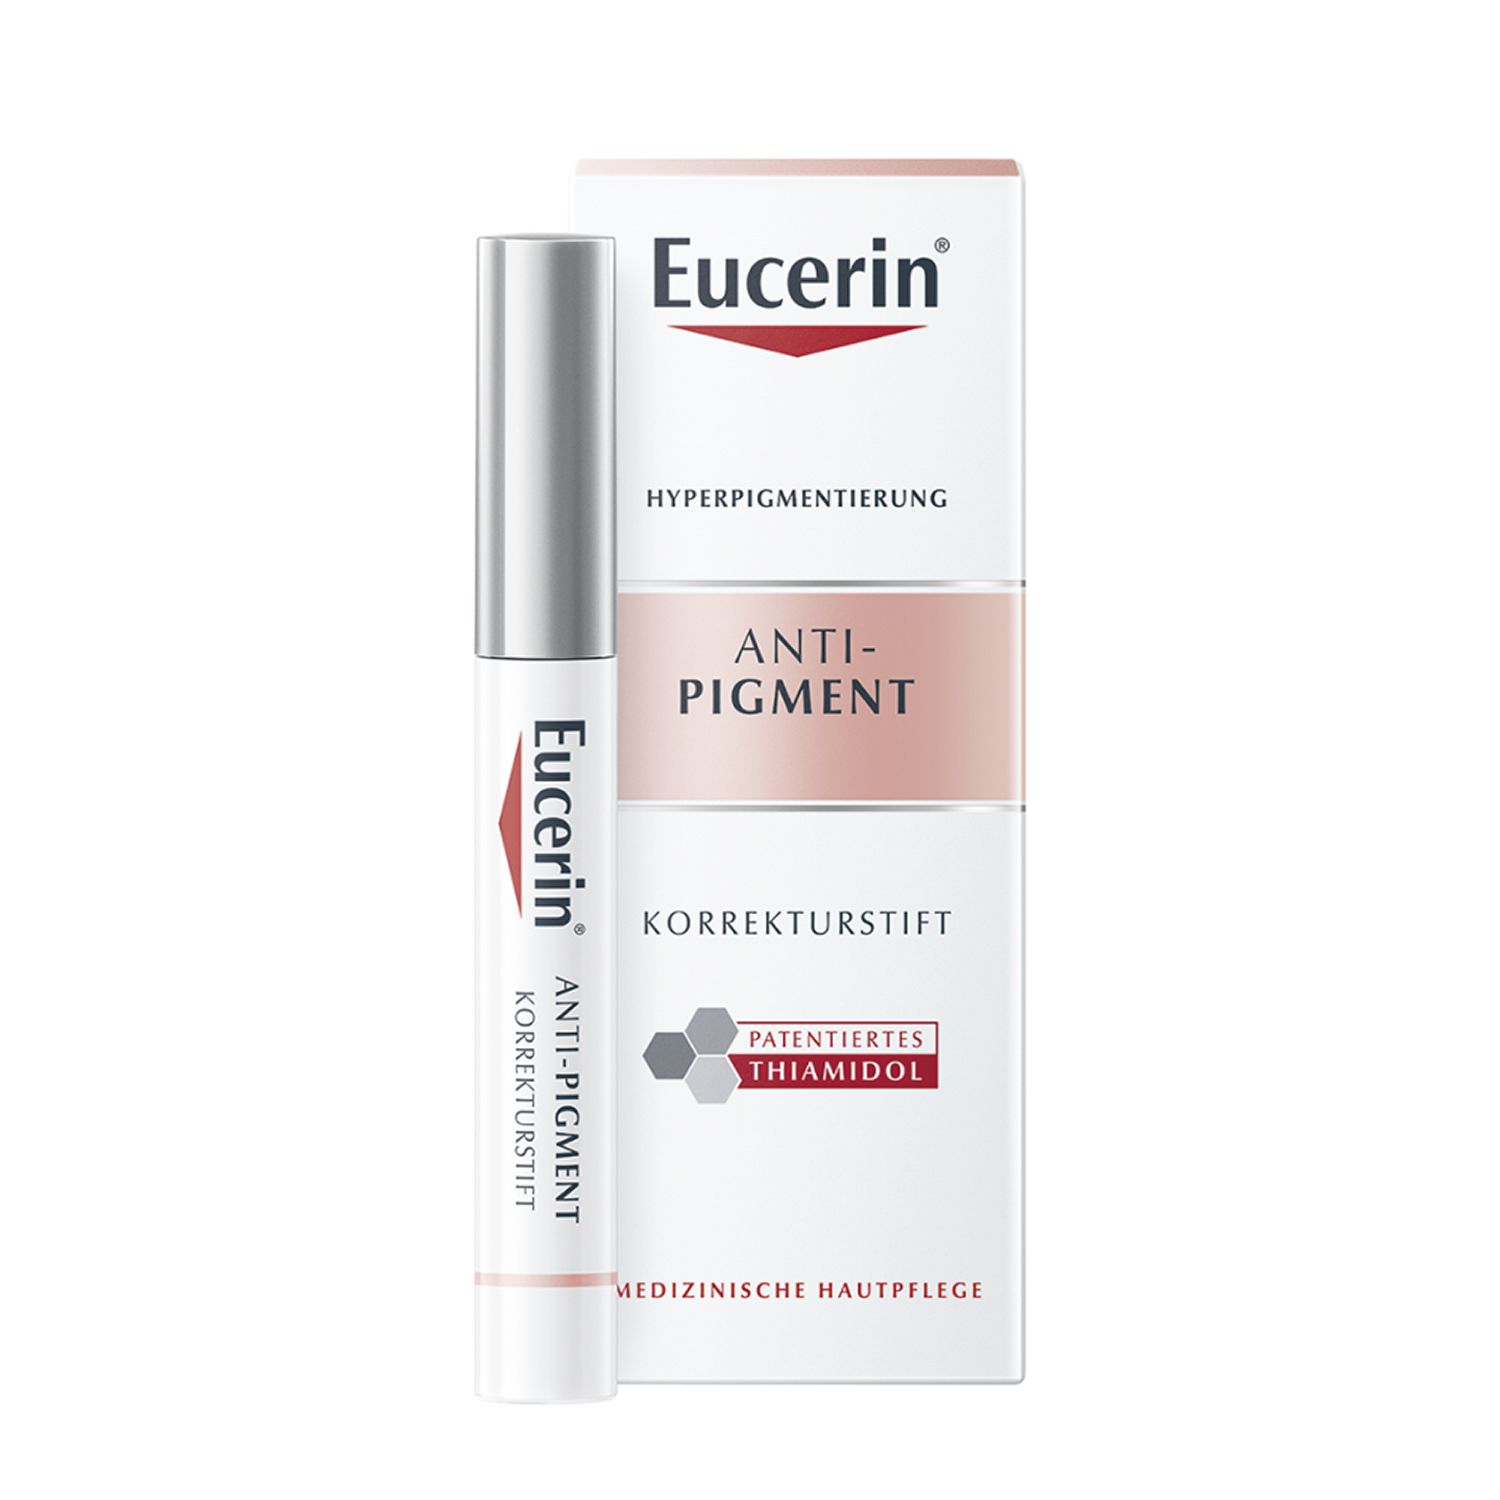 Eucerin® Anti-Pigment Korrekturstift